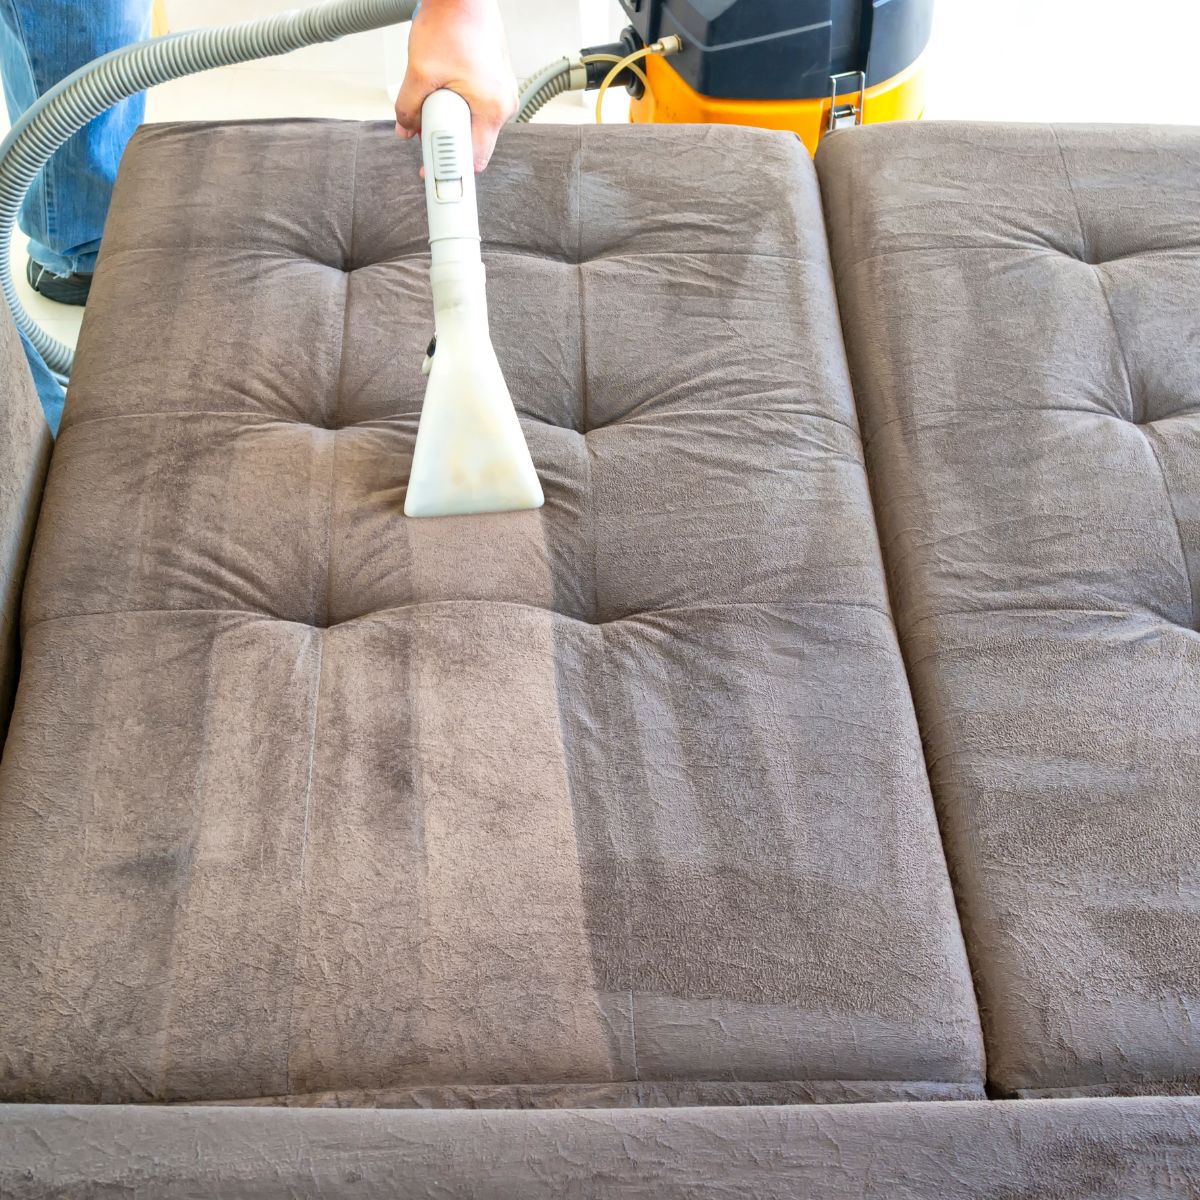 foto de sofa sujo sendo limpado